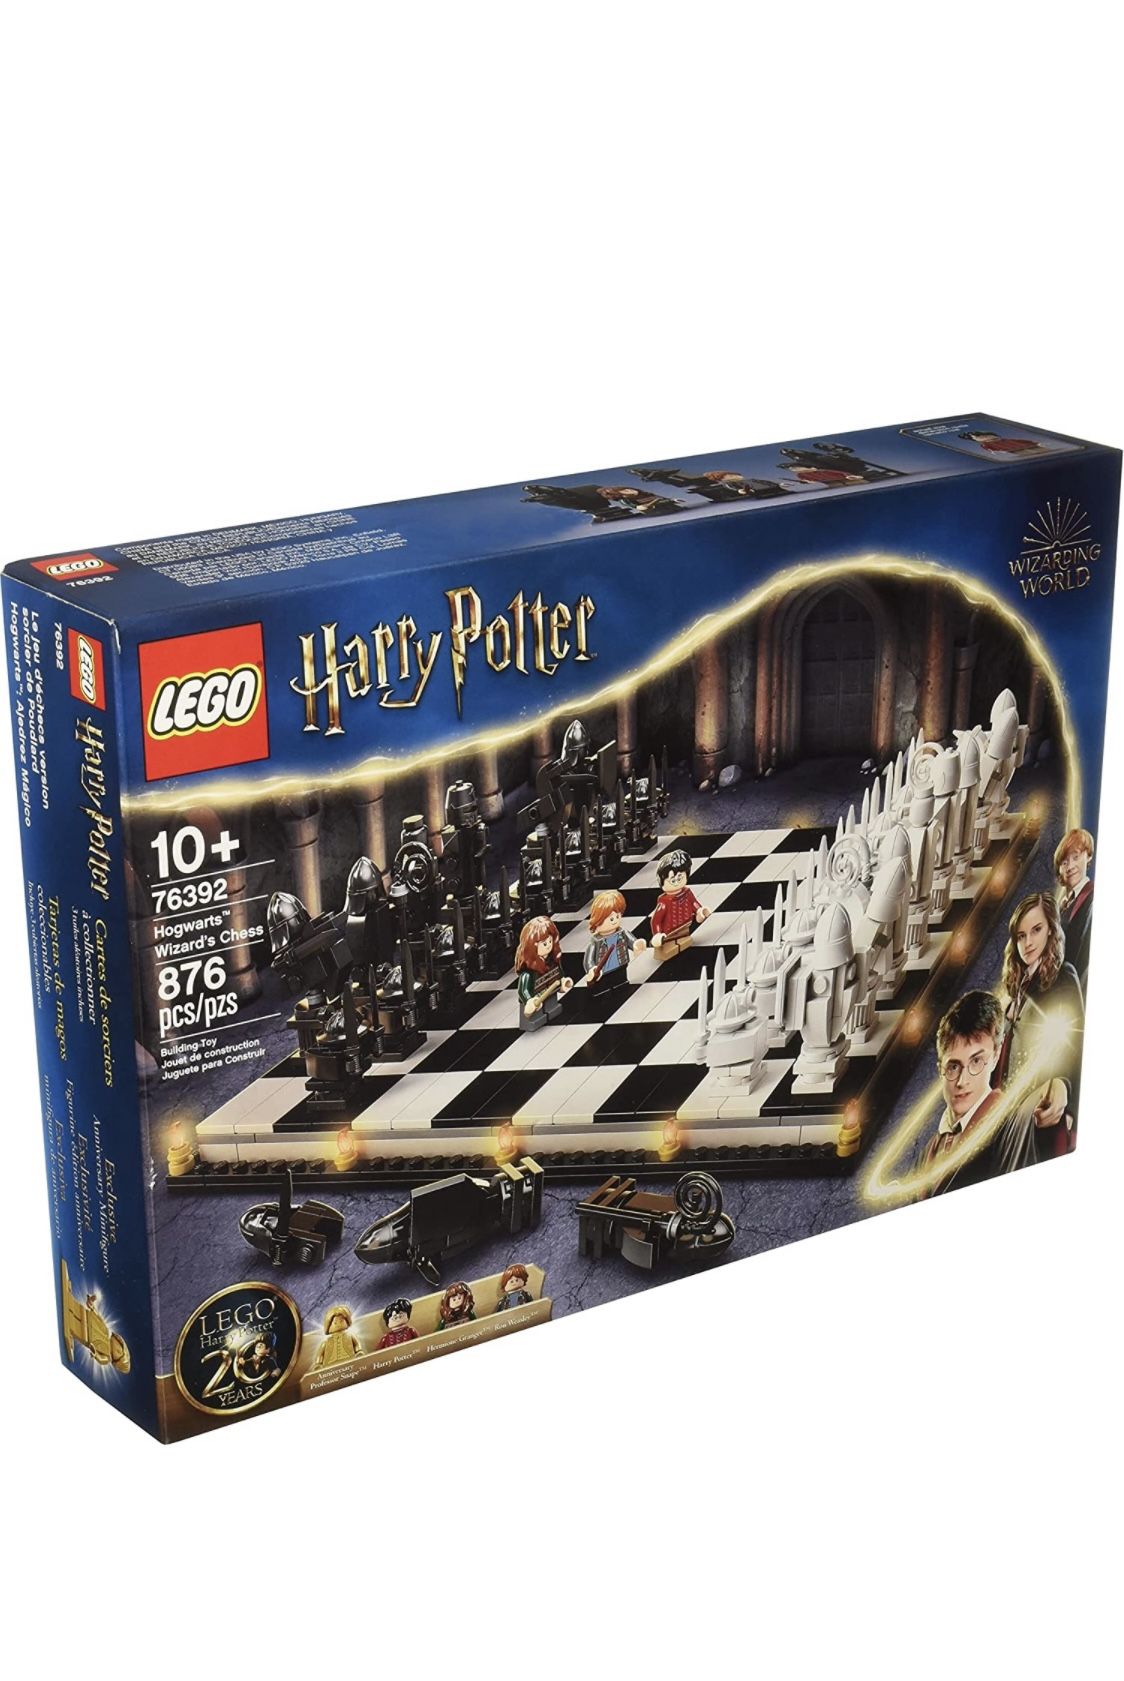 Lego Harry Potter Chess Set New Sealed Box 76392